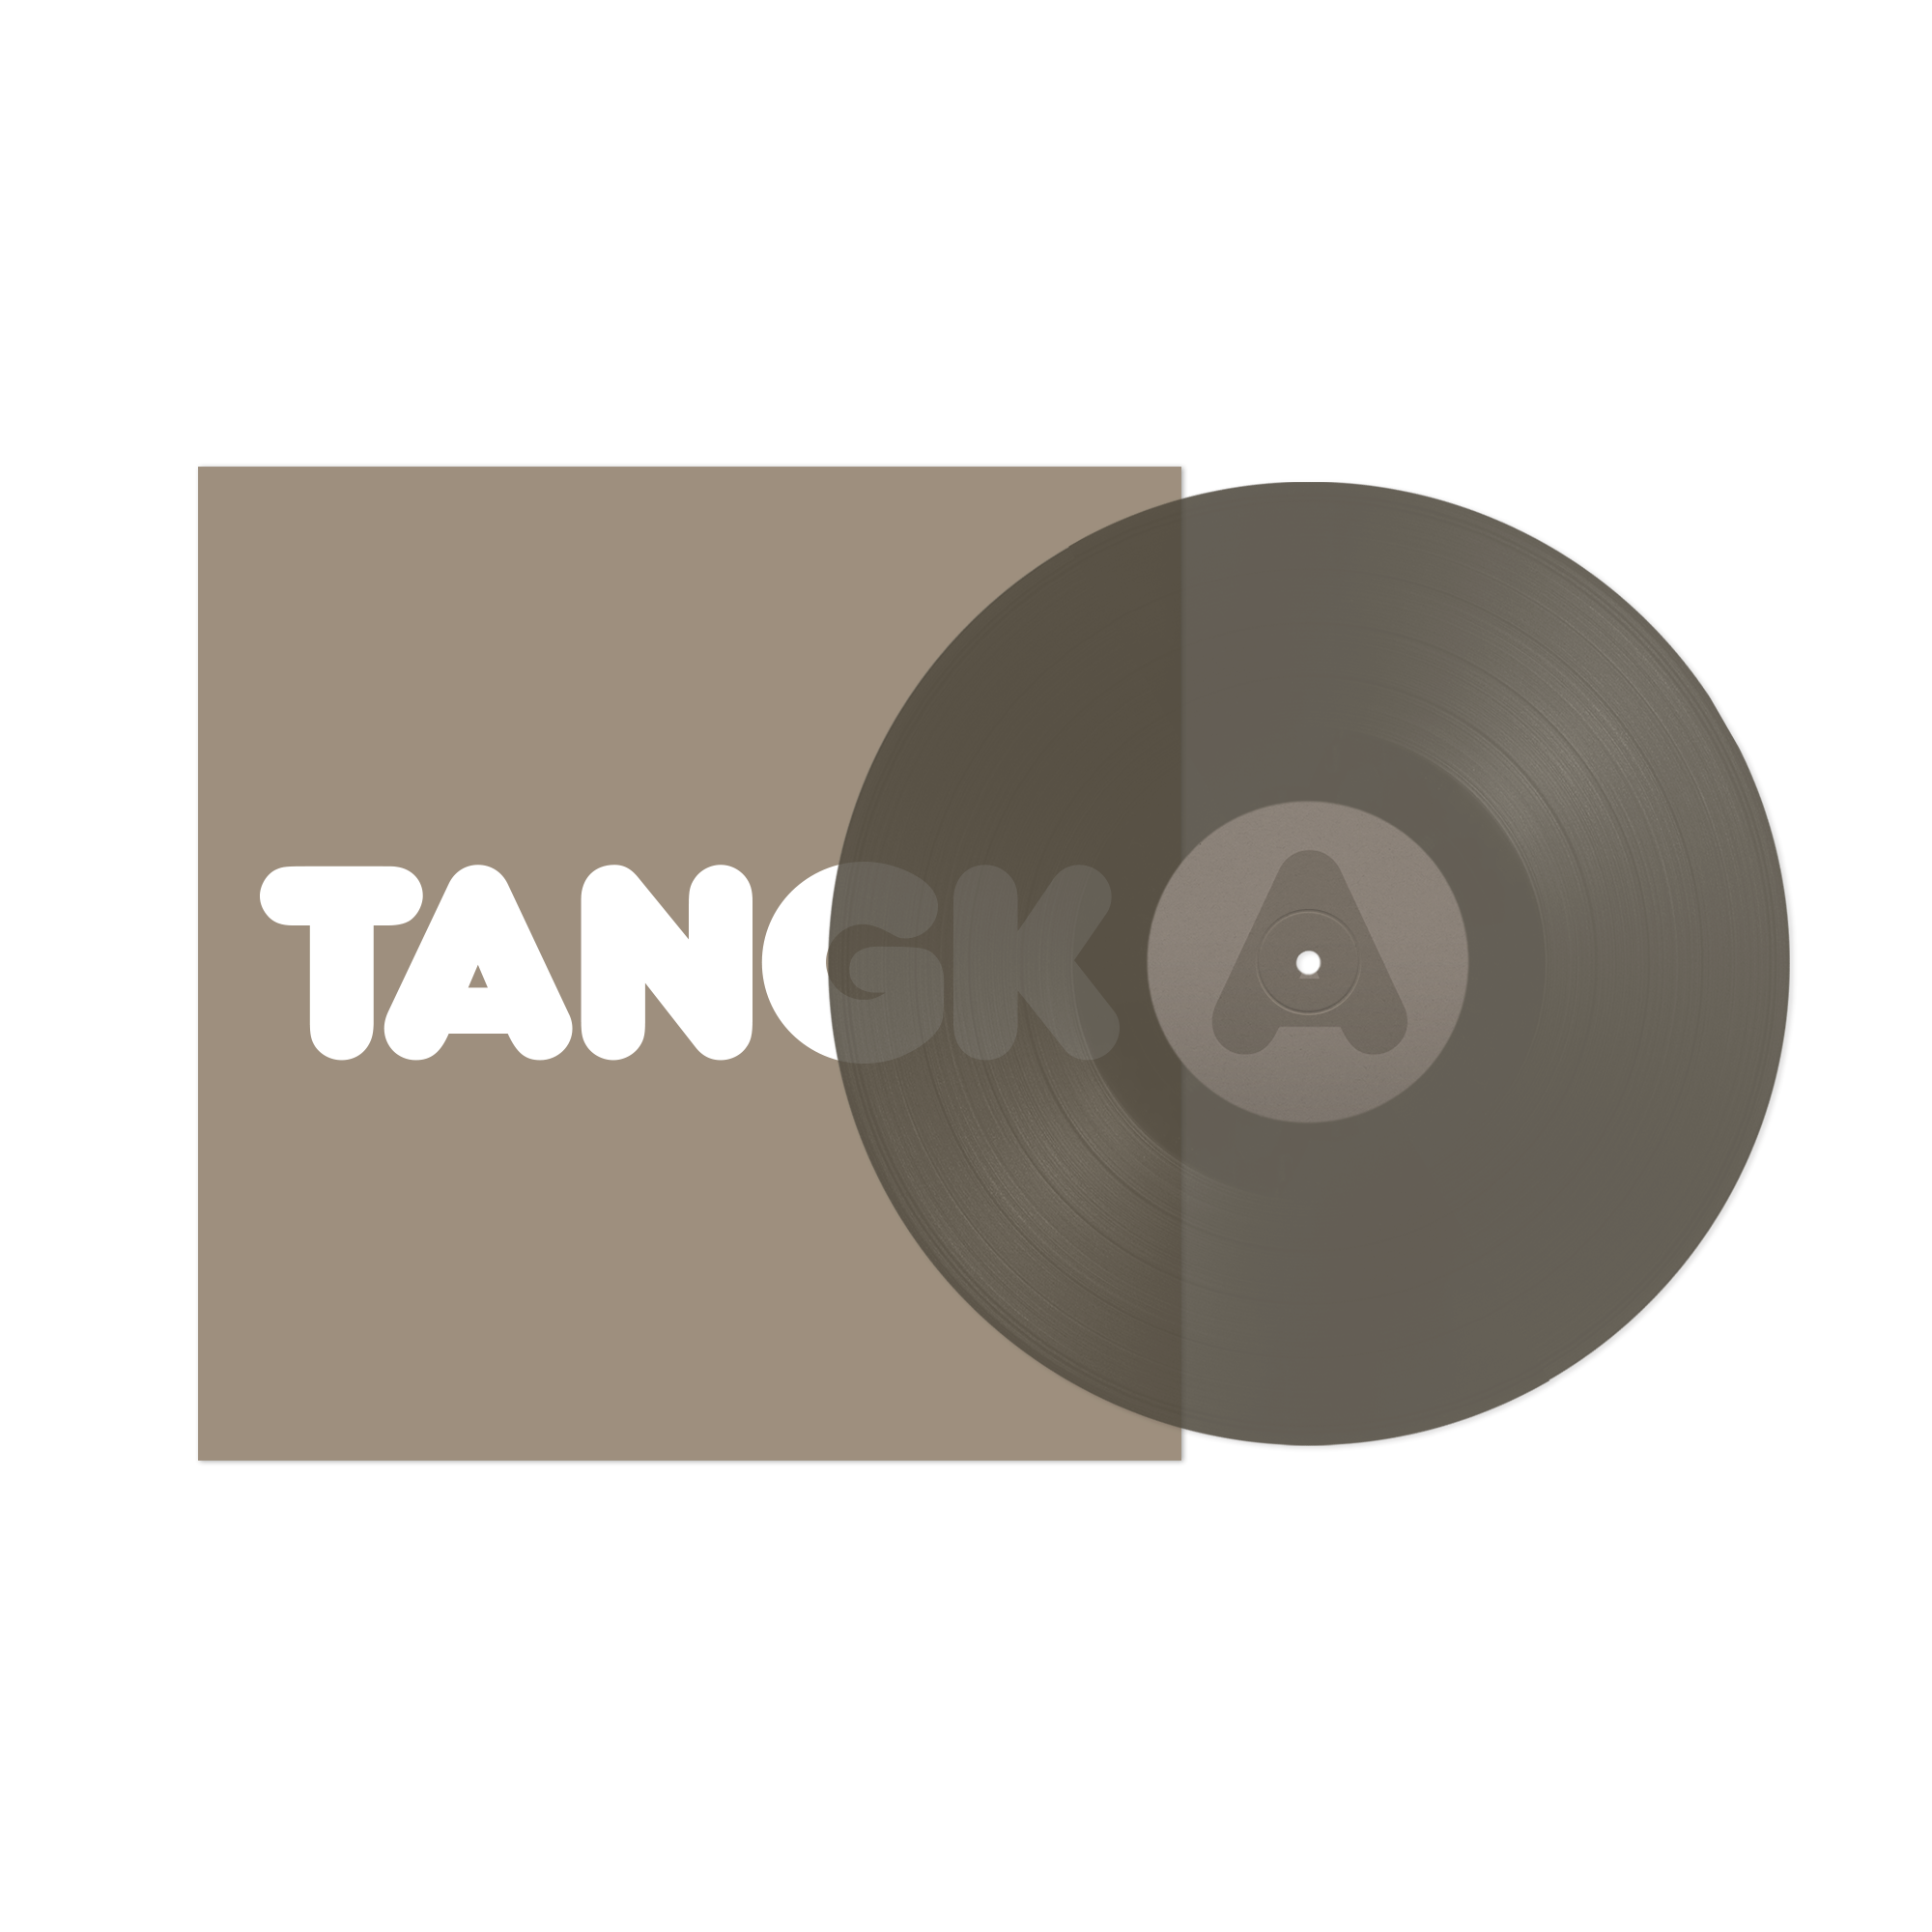 TANGK (Limited Edition Collector’s D2C Exclusive PVC LP) + Dancer T-Shirt Bundle